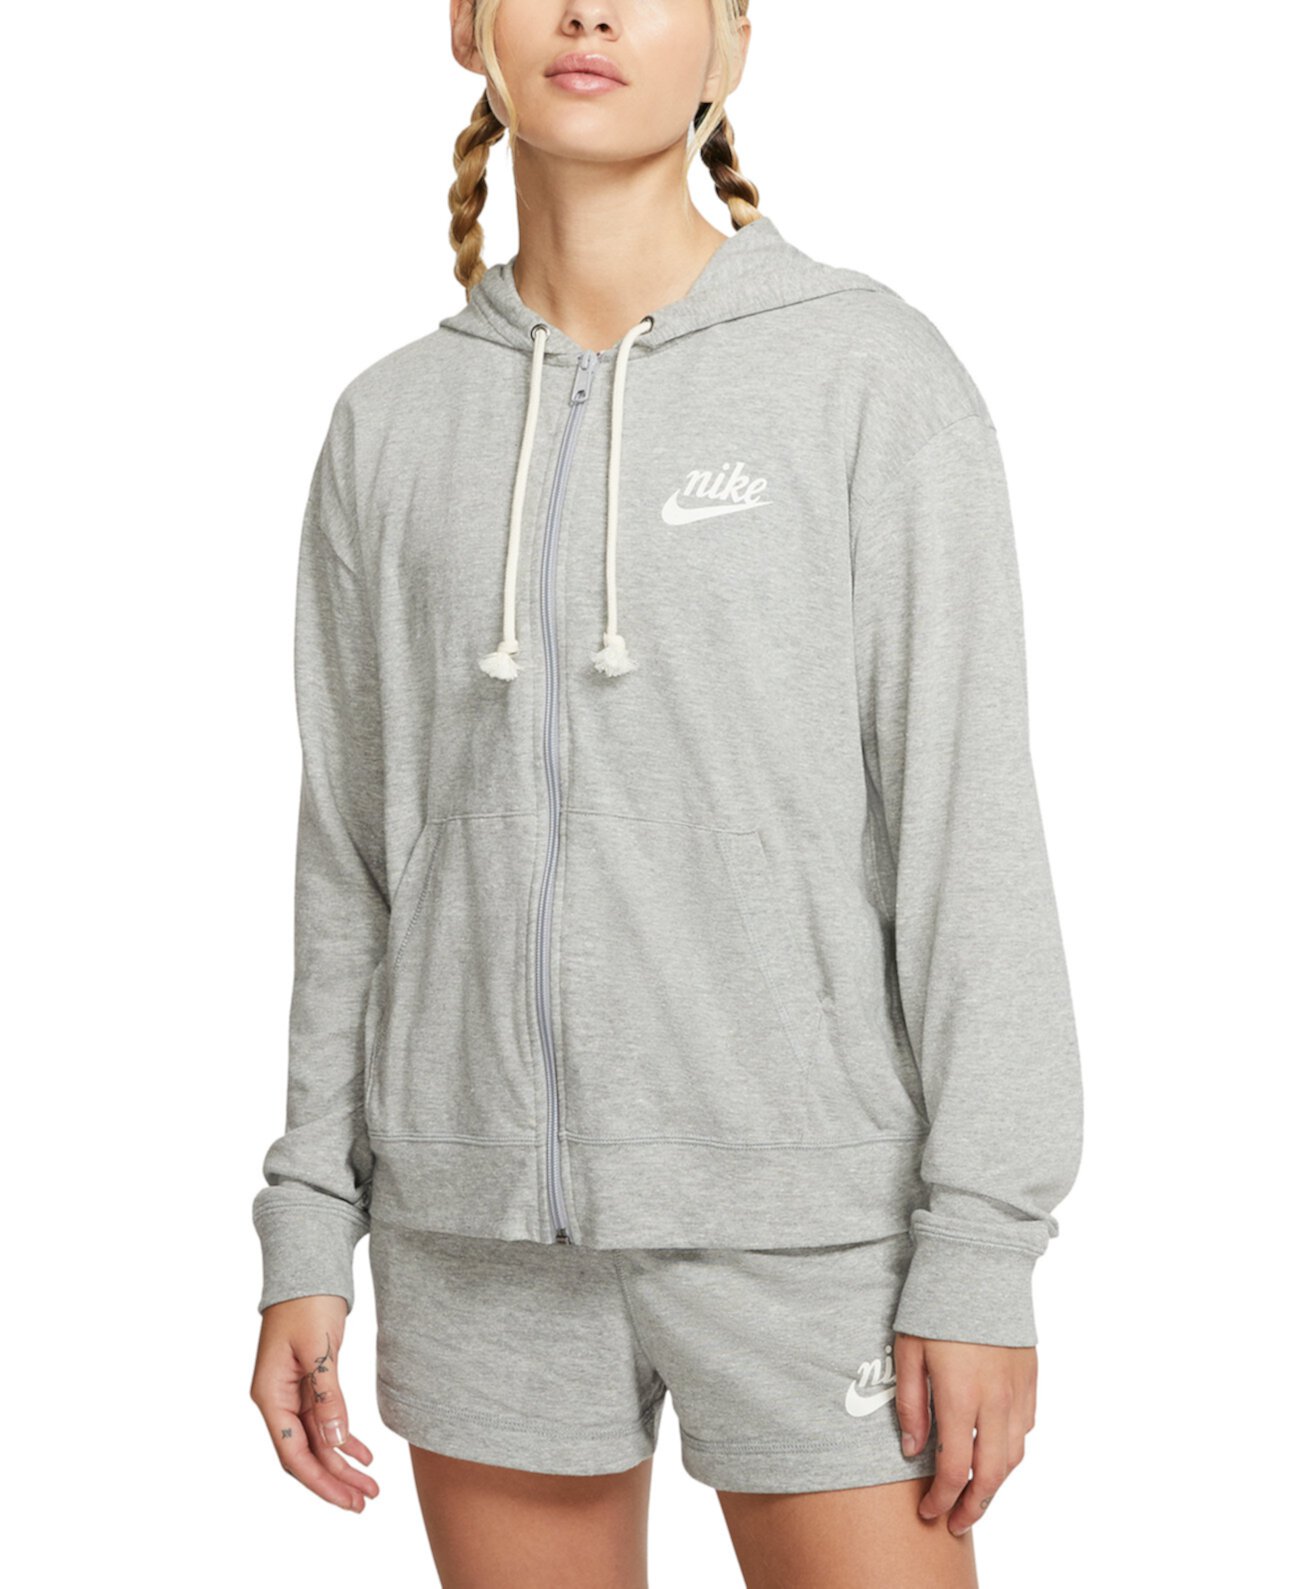 Женская спортивная одежда в винтажном стиле с капюшоном на молнии для тренажерного зала Nike